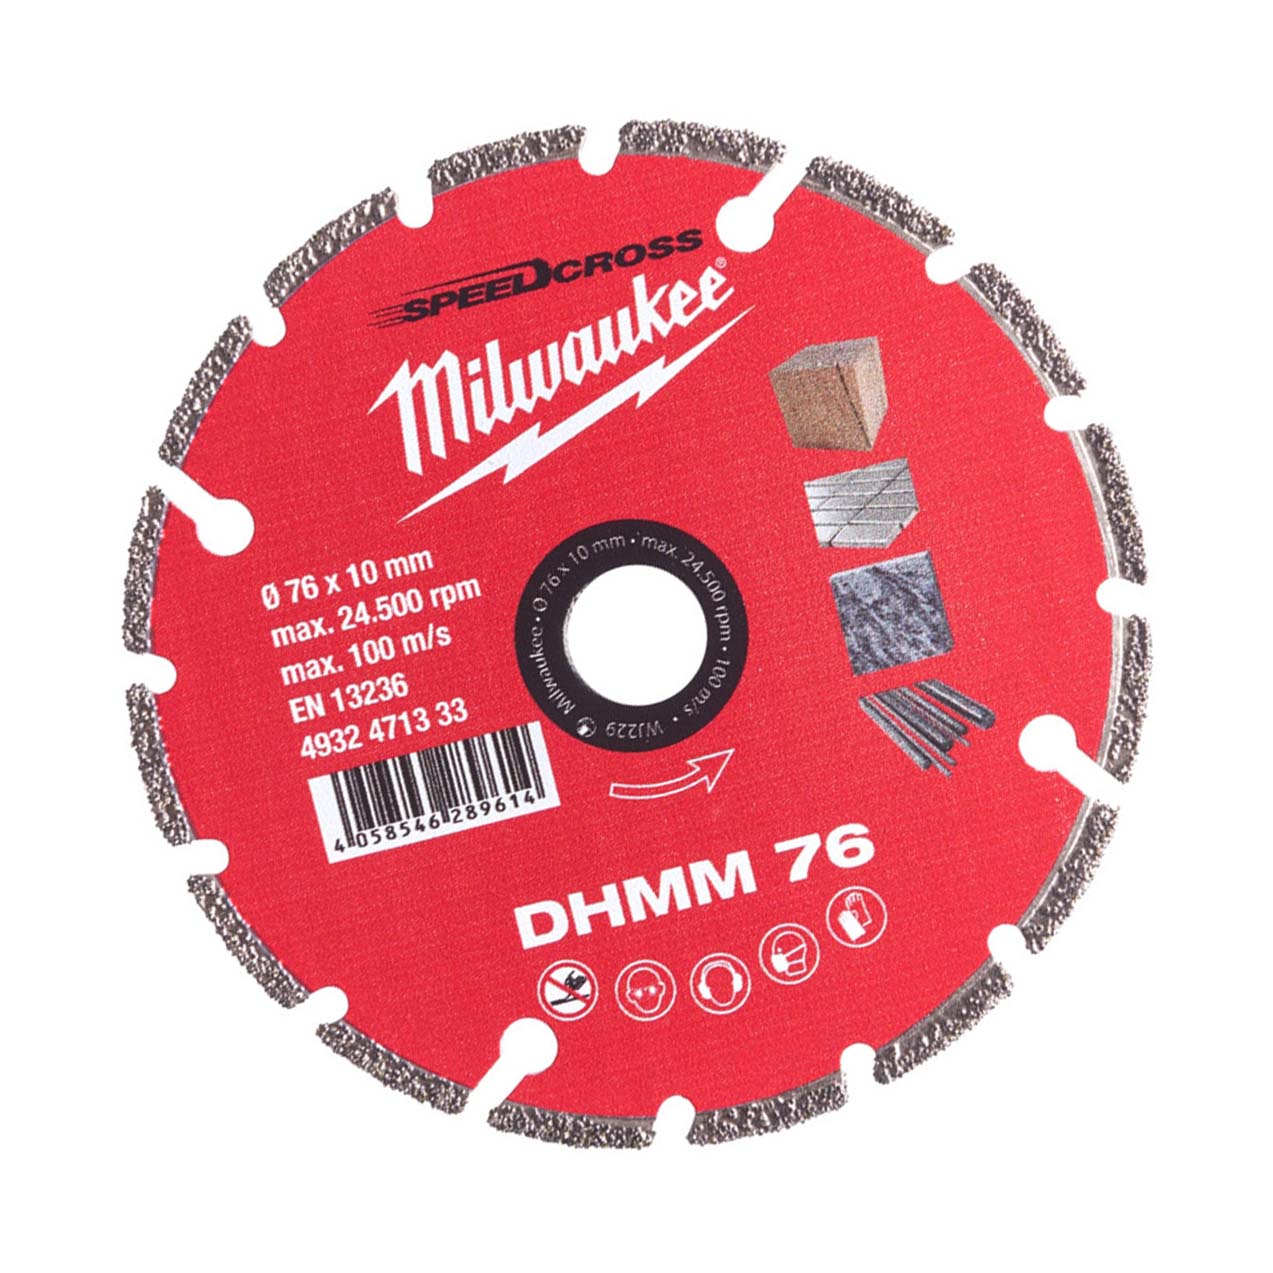 Milwaukee Diamanttrennscheibe DHMM 76 mm für Stahl, Holz, Kunststoff, Gipskarton, Porzellan - 1 Stk.